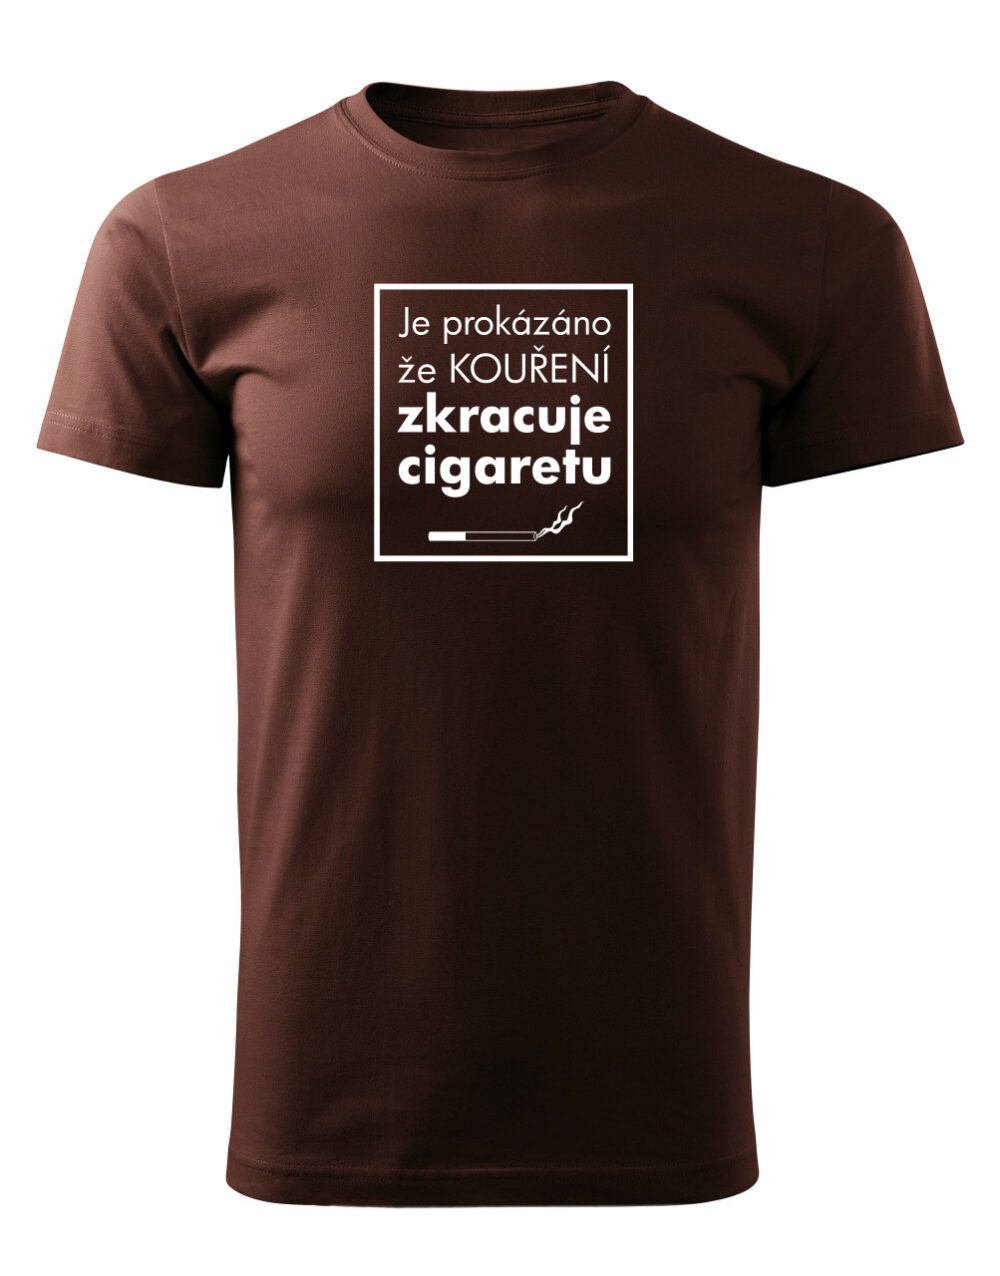 Pánské tričko s potiskem Kouření zkracuje cigaretu čokoládová